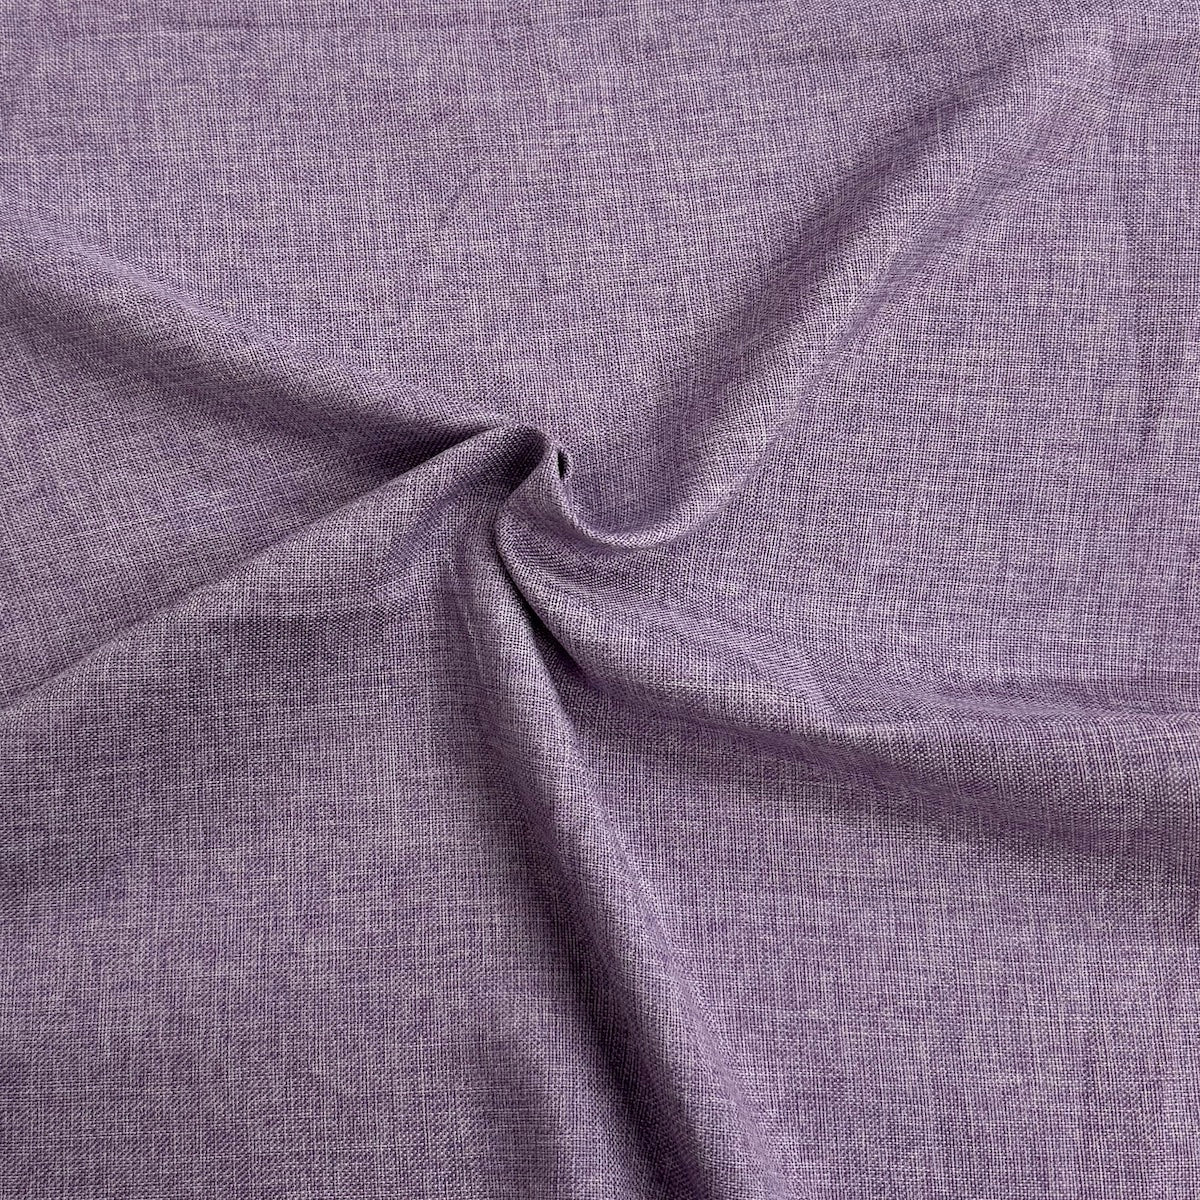 Lavender Two Tone Vintage Linen Faux Burlap Fabric